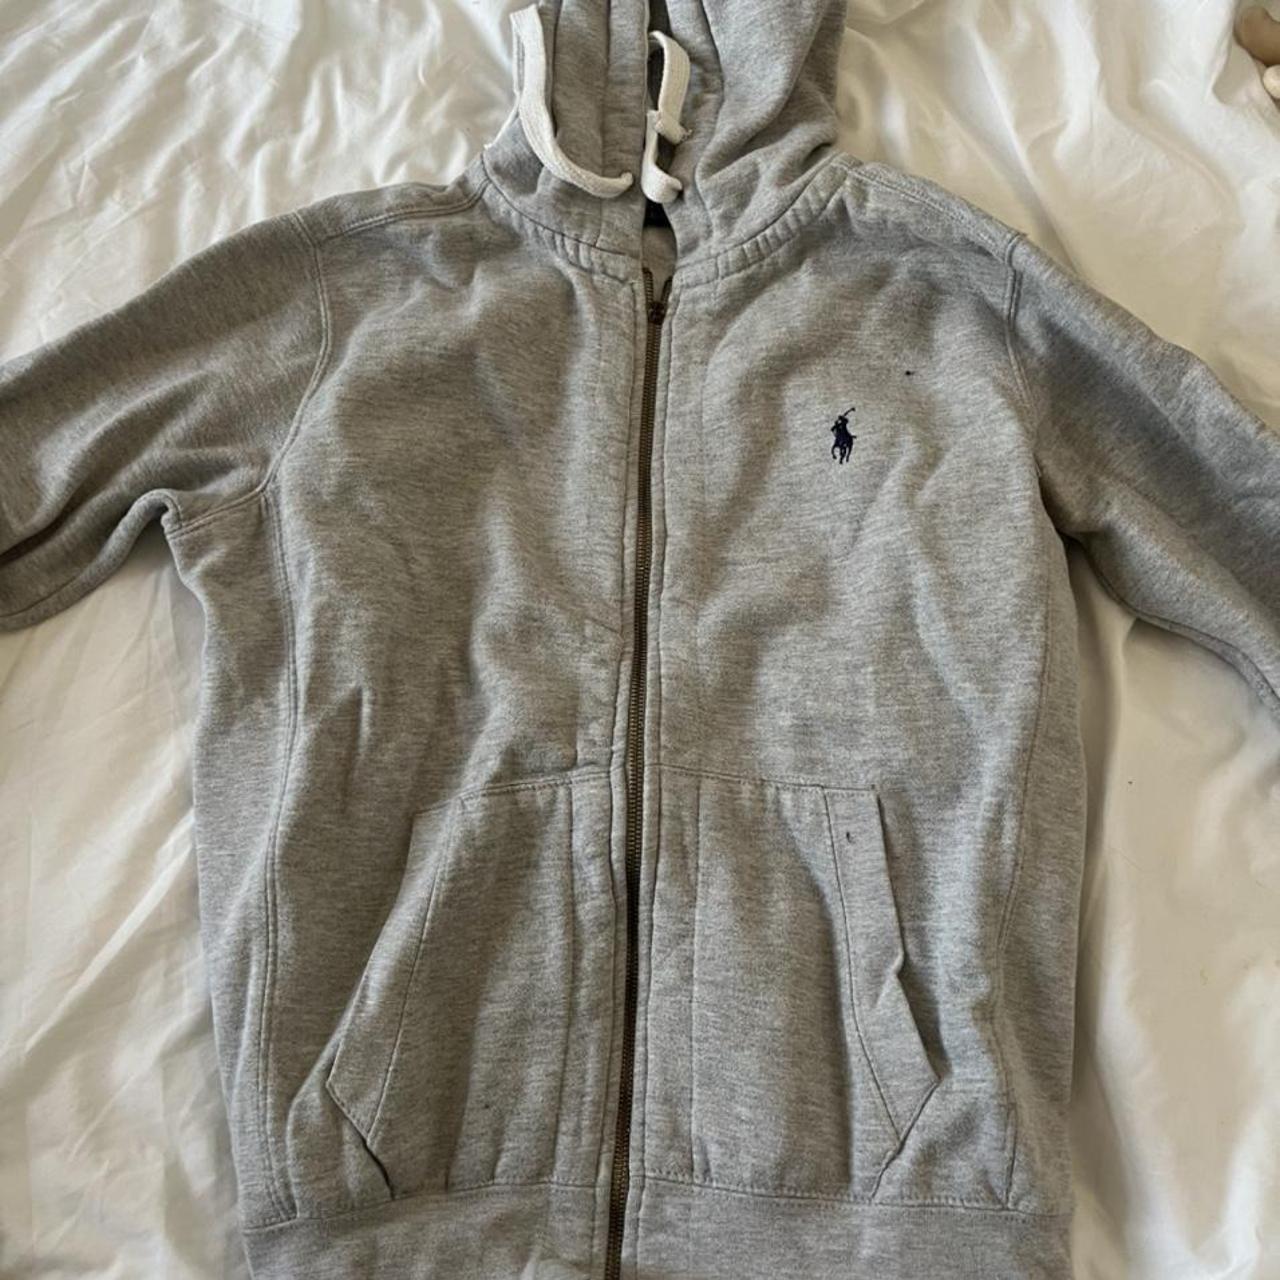 Ralph Lauren grey zip up hoodie Size small Only... - Depop